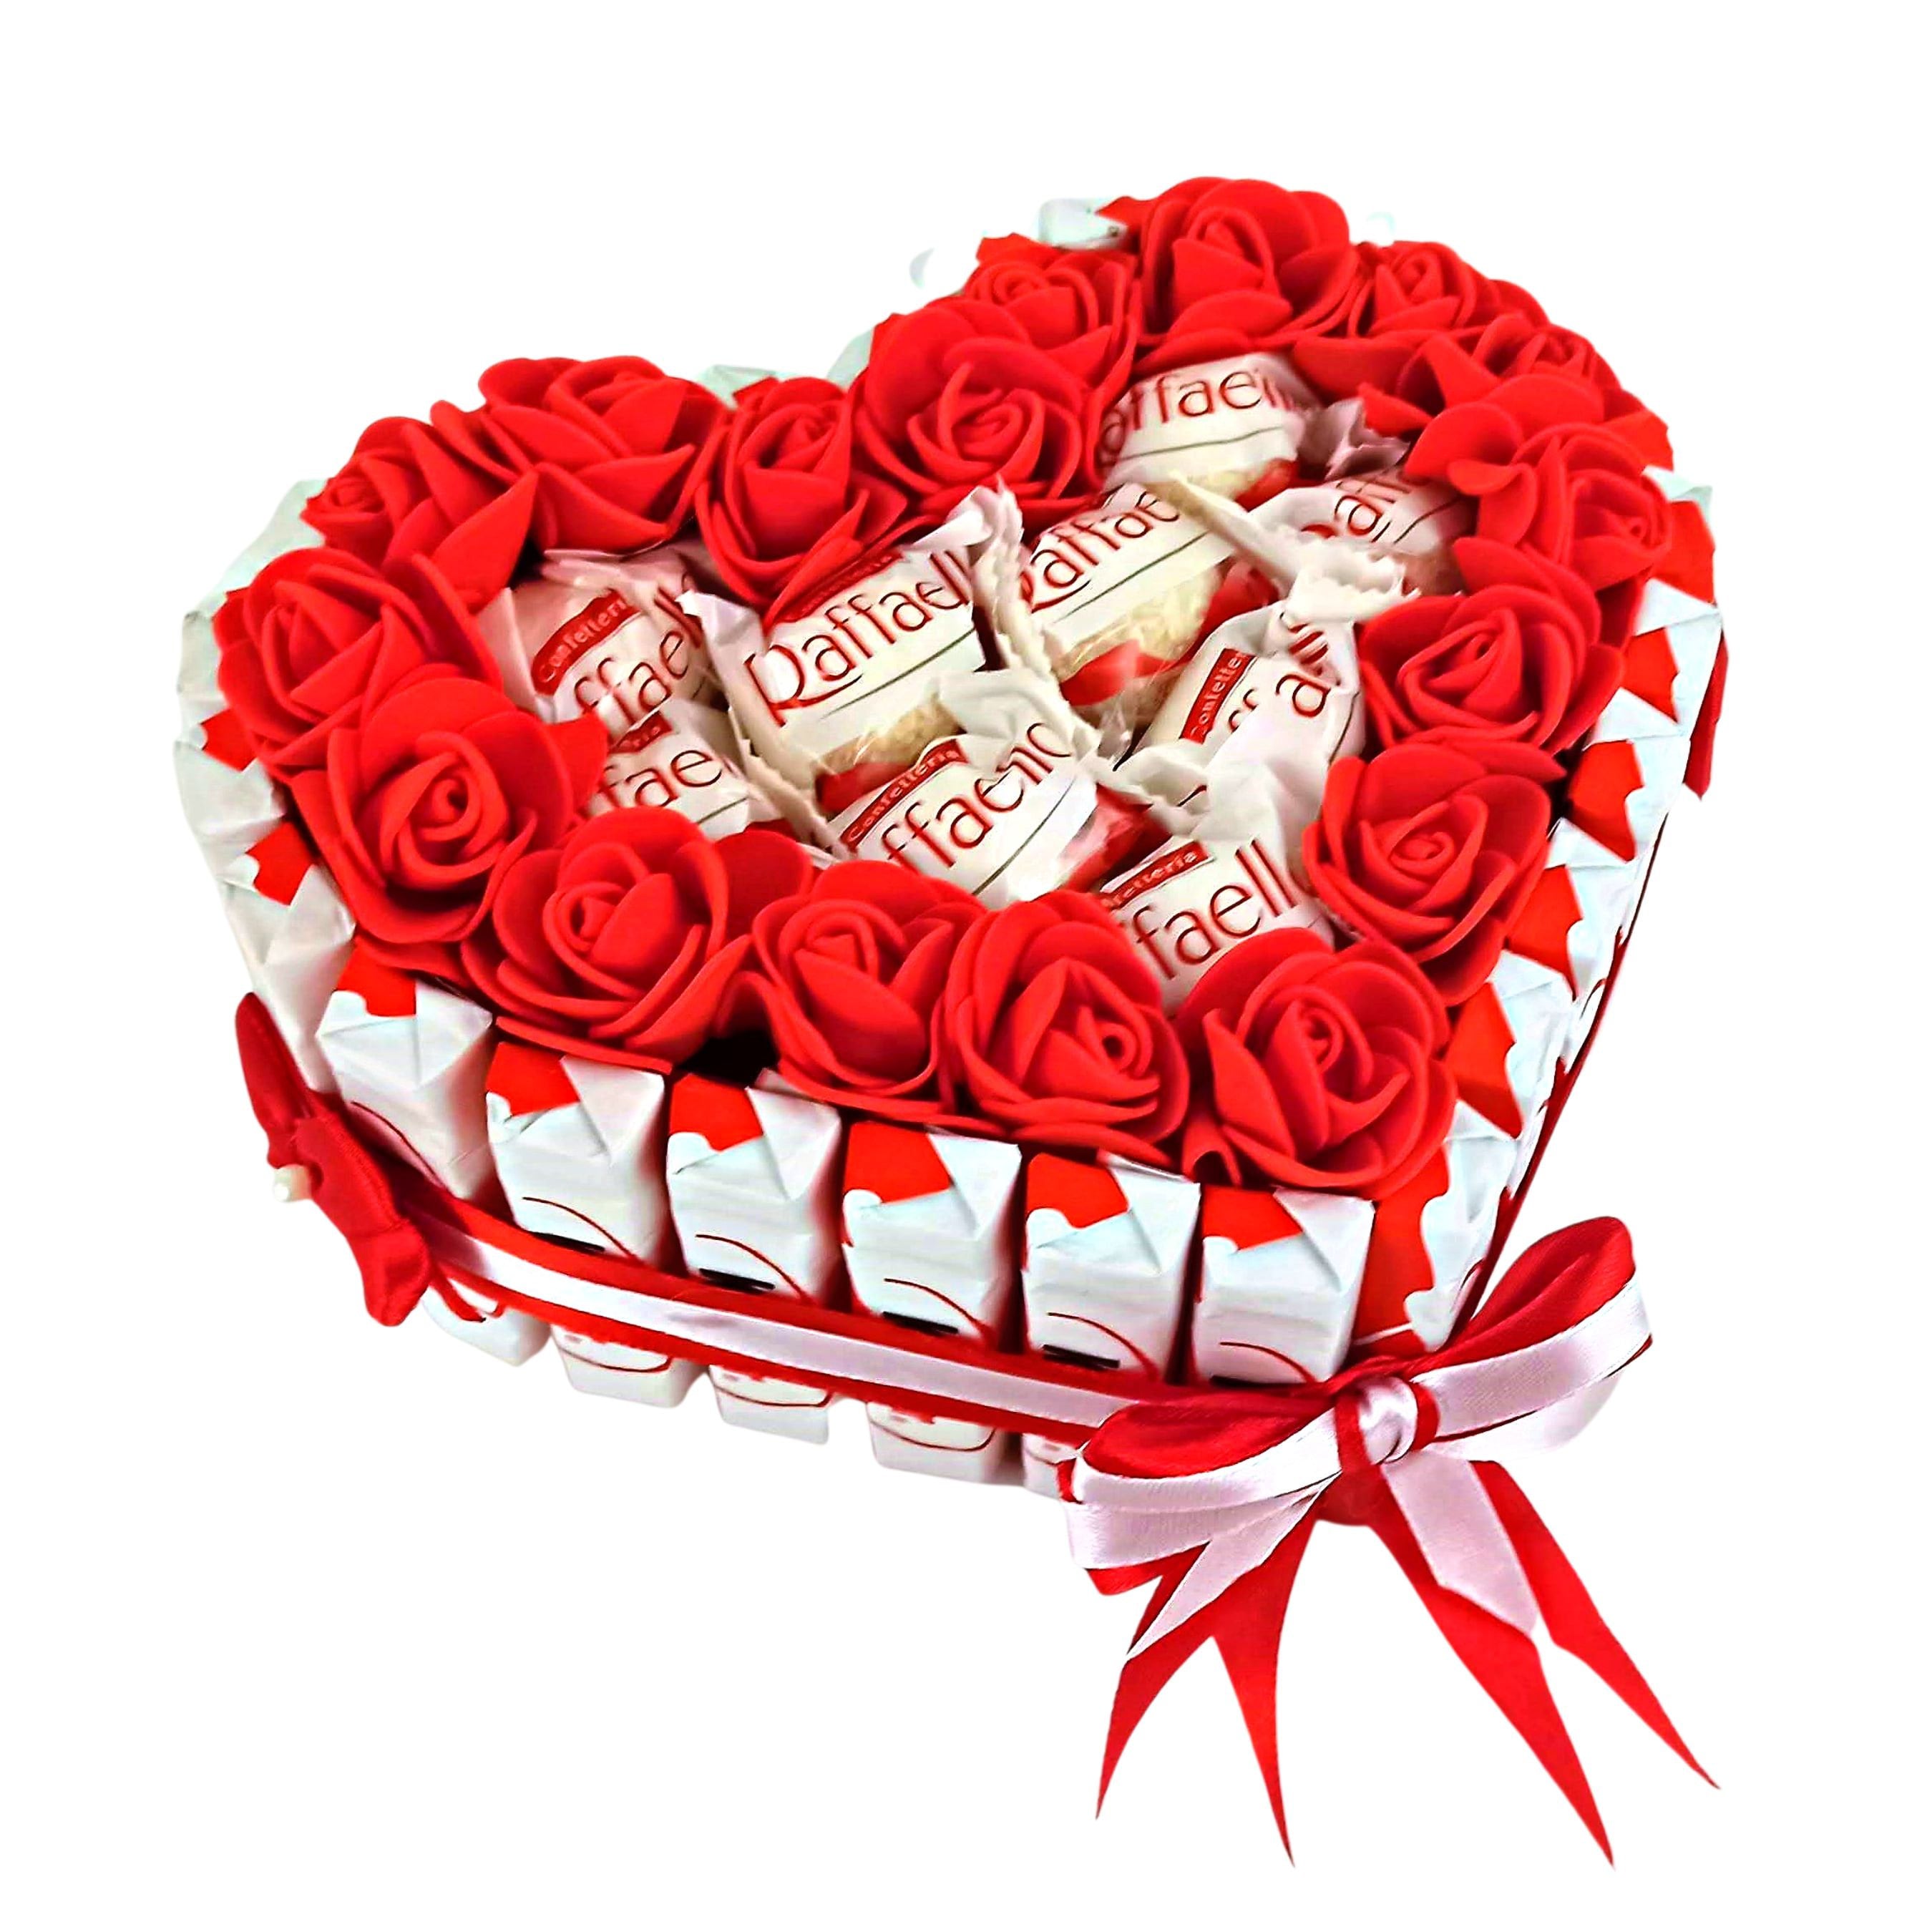 Coffret cadeau chocolat haut de gamme Coffret cadeau Ferrero Rocher Coffret  cadeau Rafaello Cadeau pour elle Cadeau pour lui Cadeau pour maman Cadeau  pour petit ami -  France